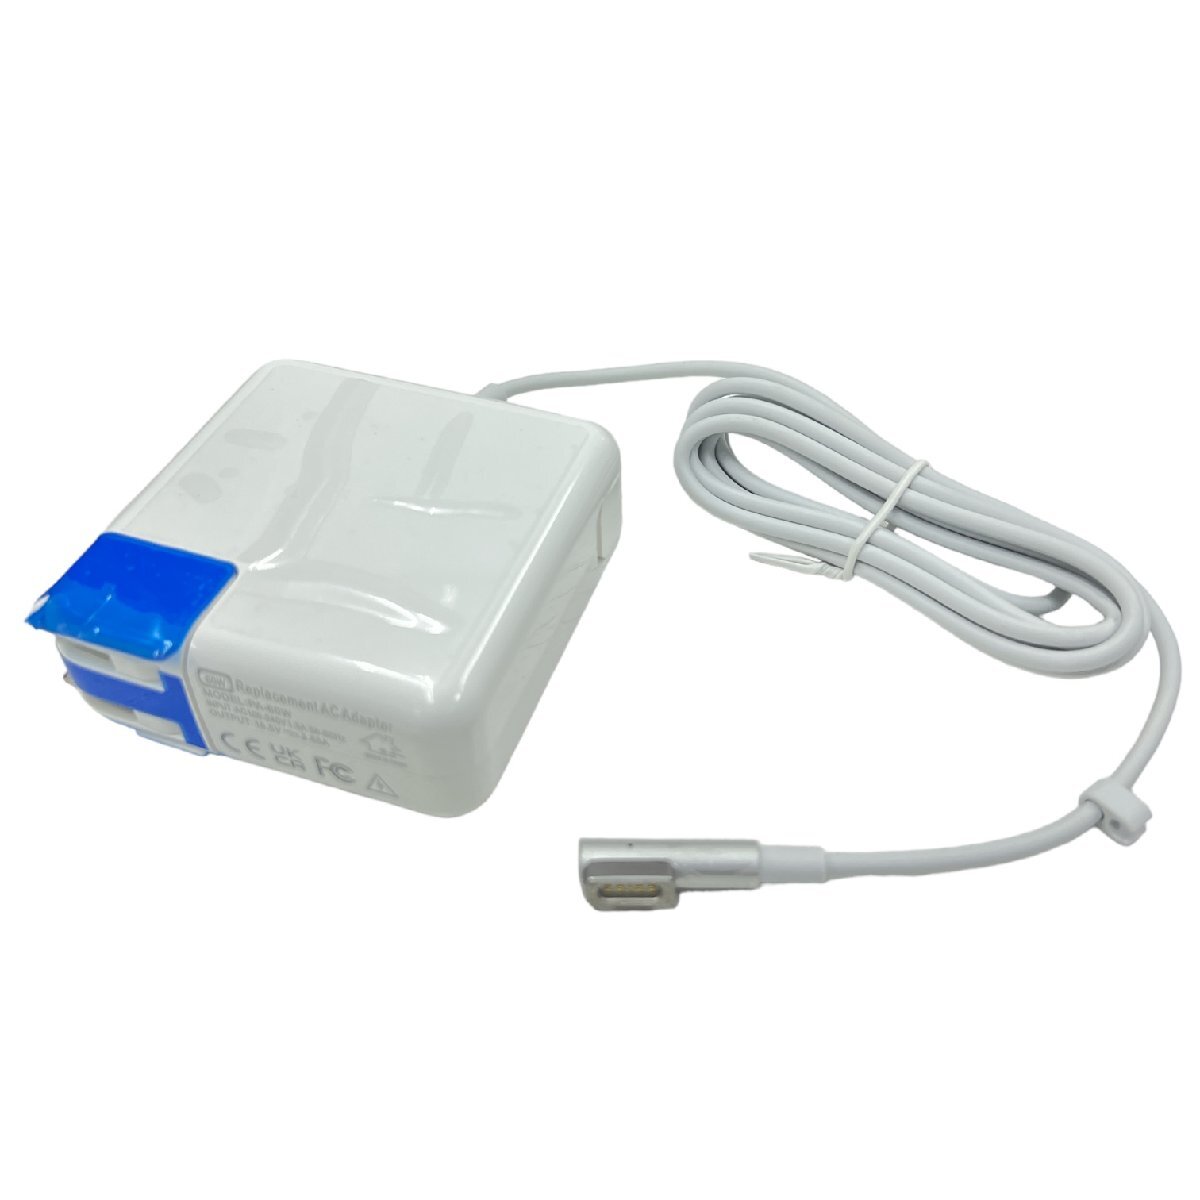 未使用 互換 充電器 60W L 型 電源アダプタ Macbook ノートパソコン KJ143_画像1